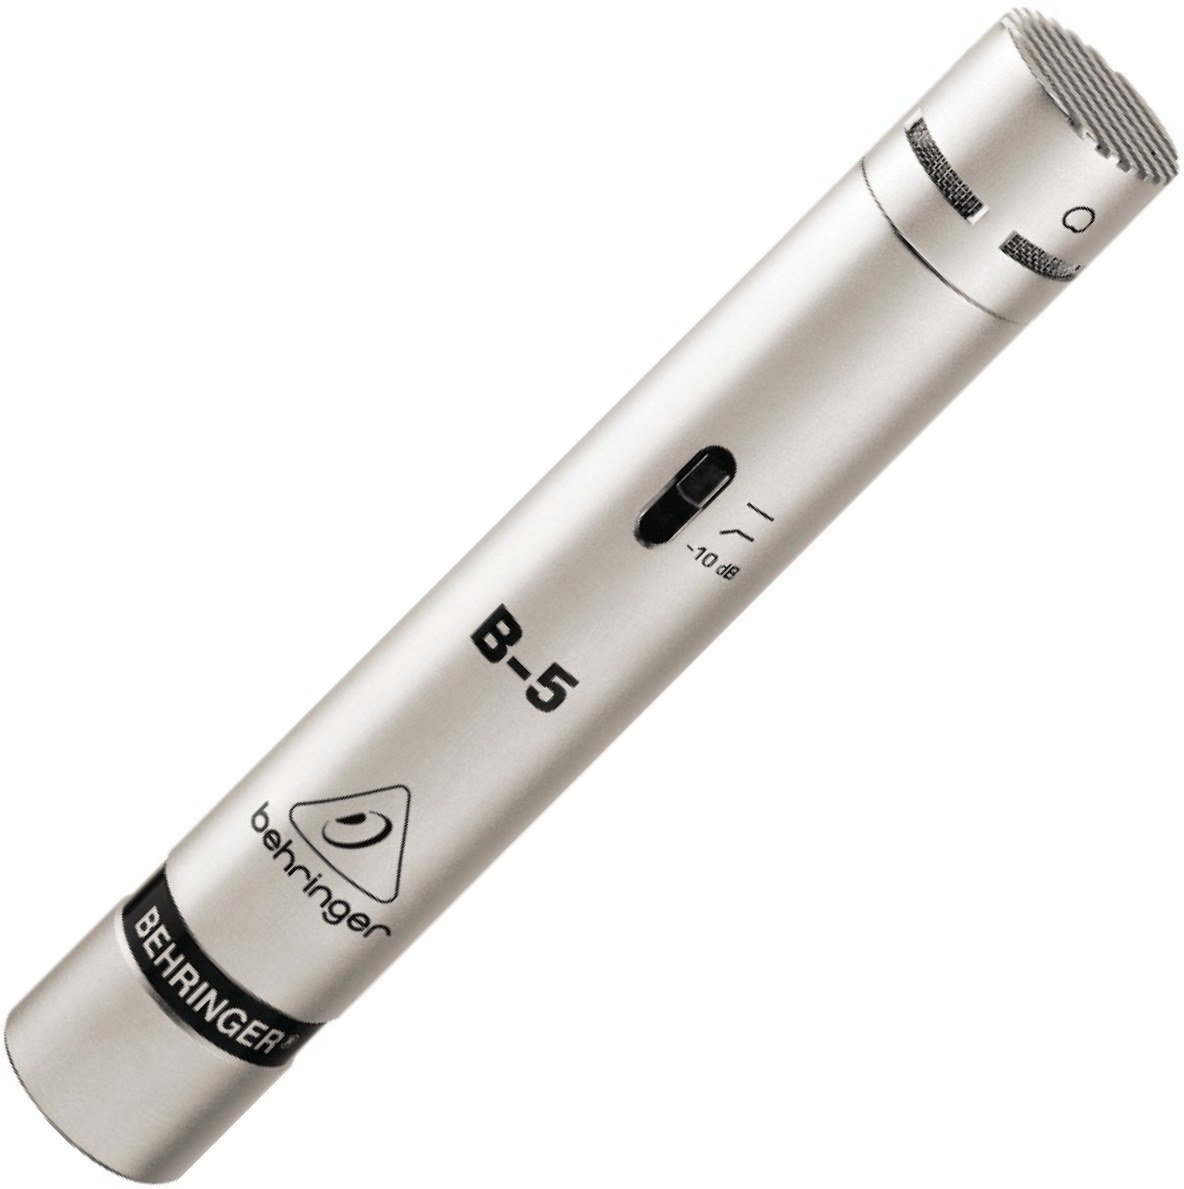 Instrument Condenser Microphone Behringer B-5 Condenser Microphone